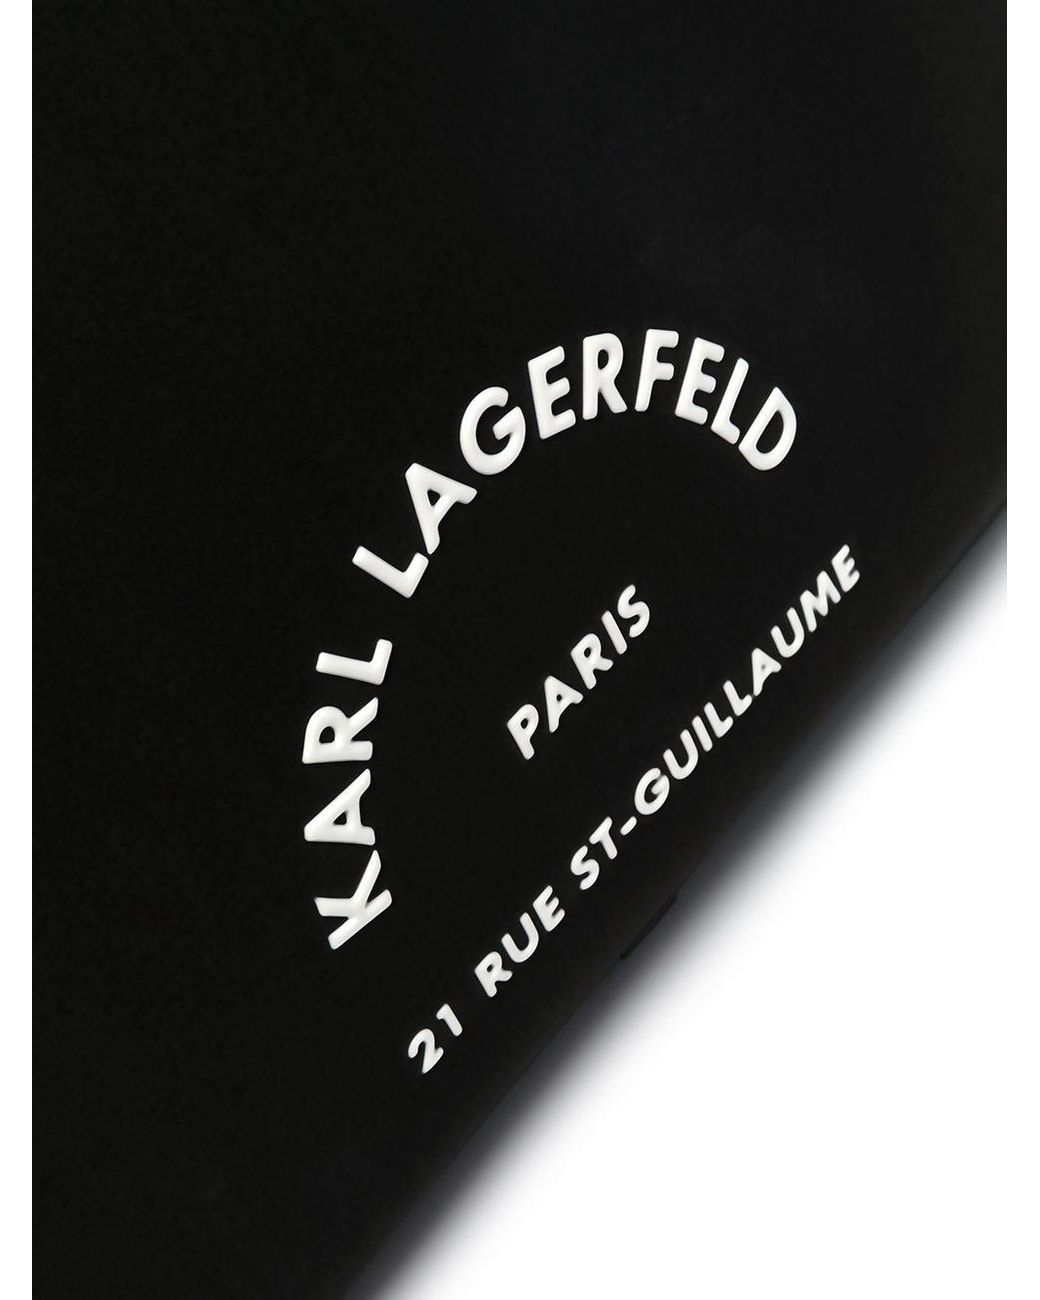 13 ''Rue St Guillaume black KLCS133RSGSFBK laptop Karl Lagerfeld tablet case  - AliExpress